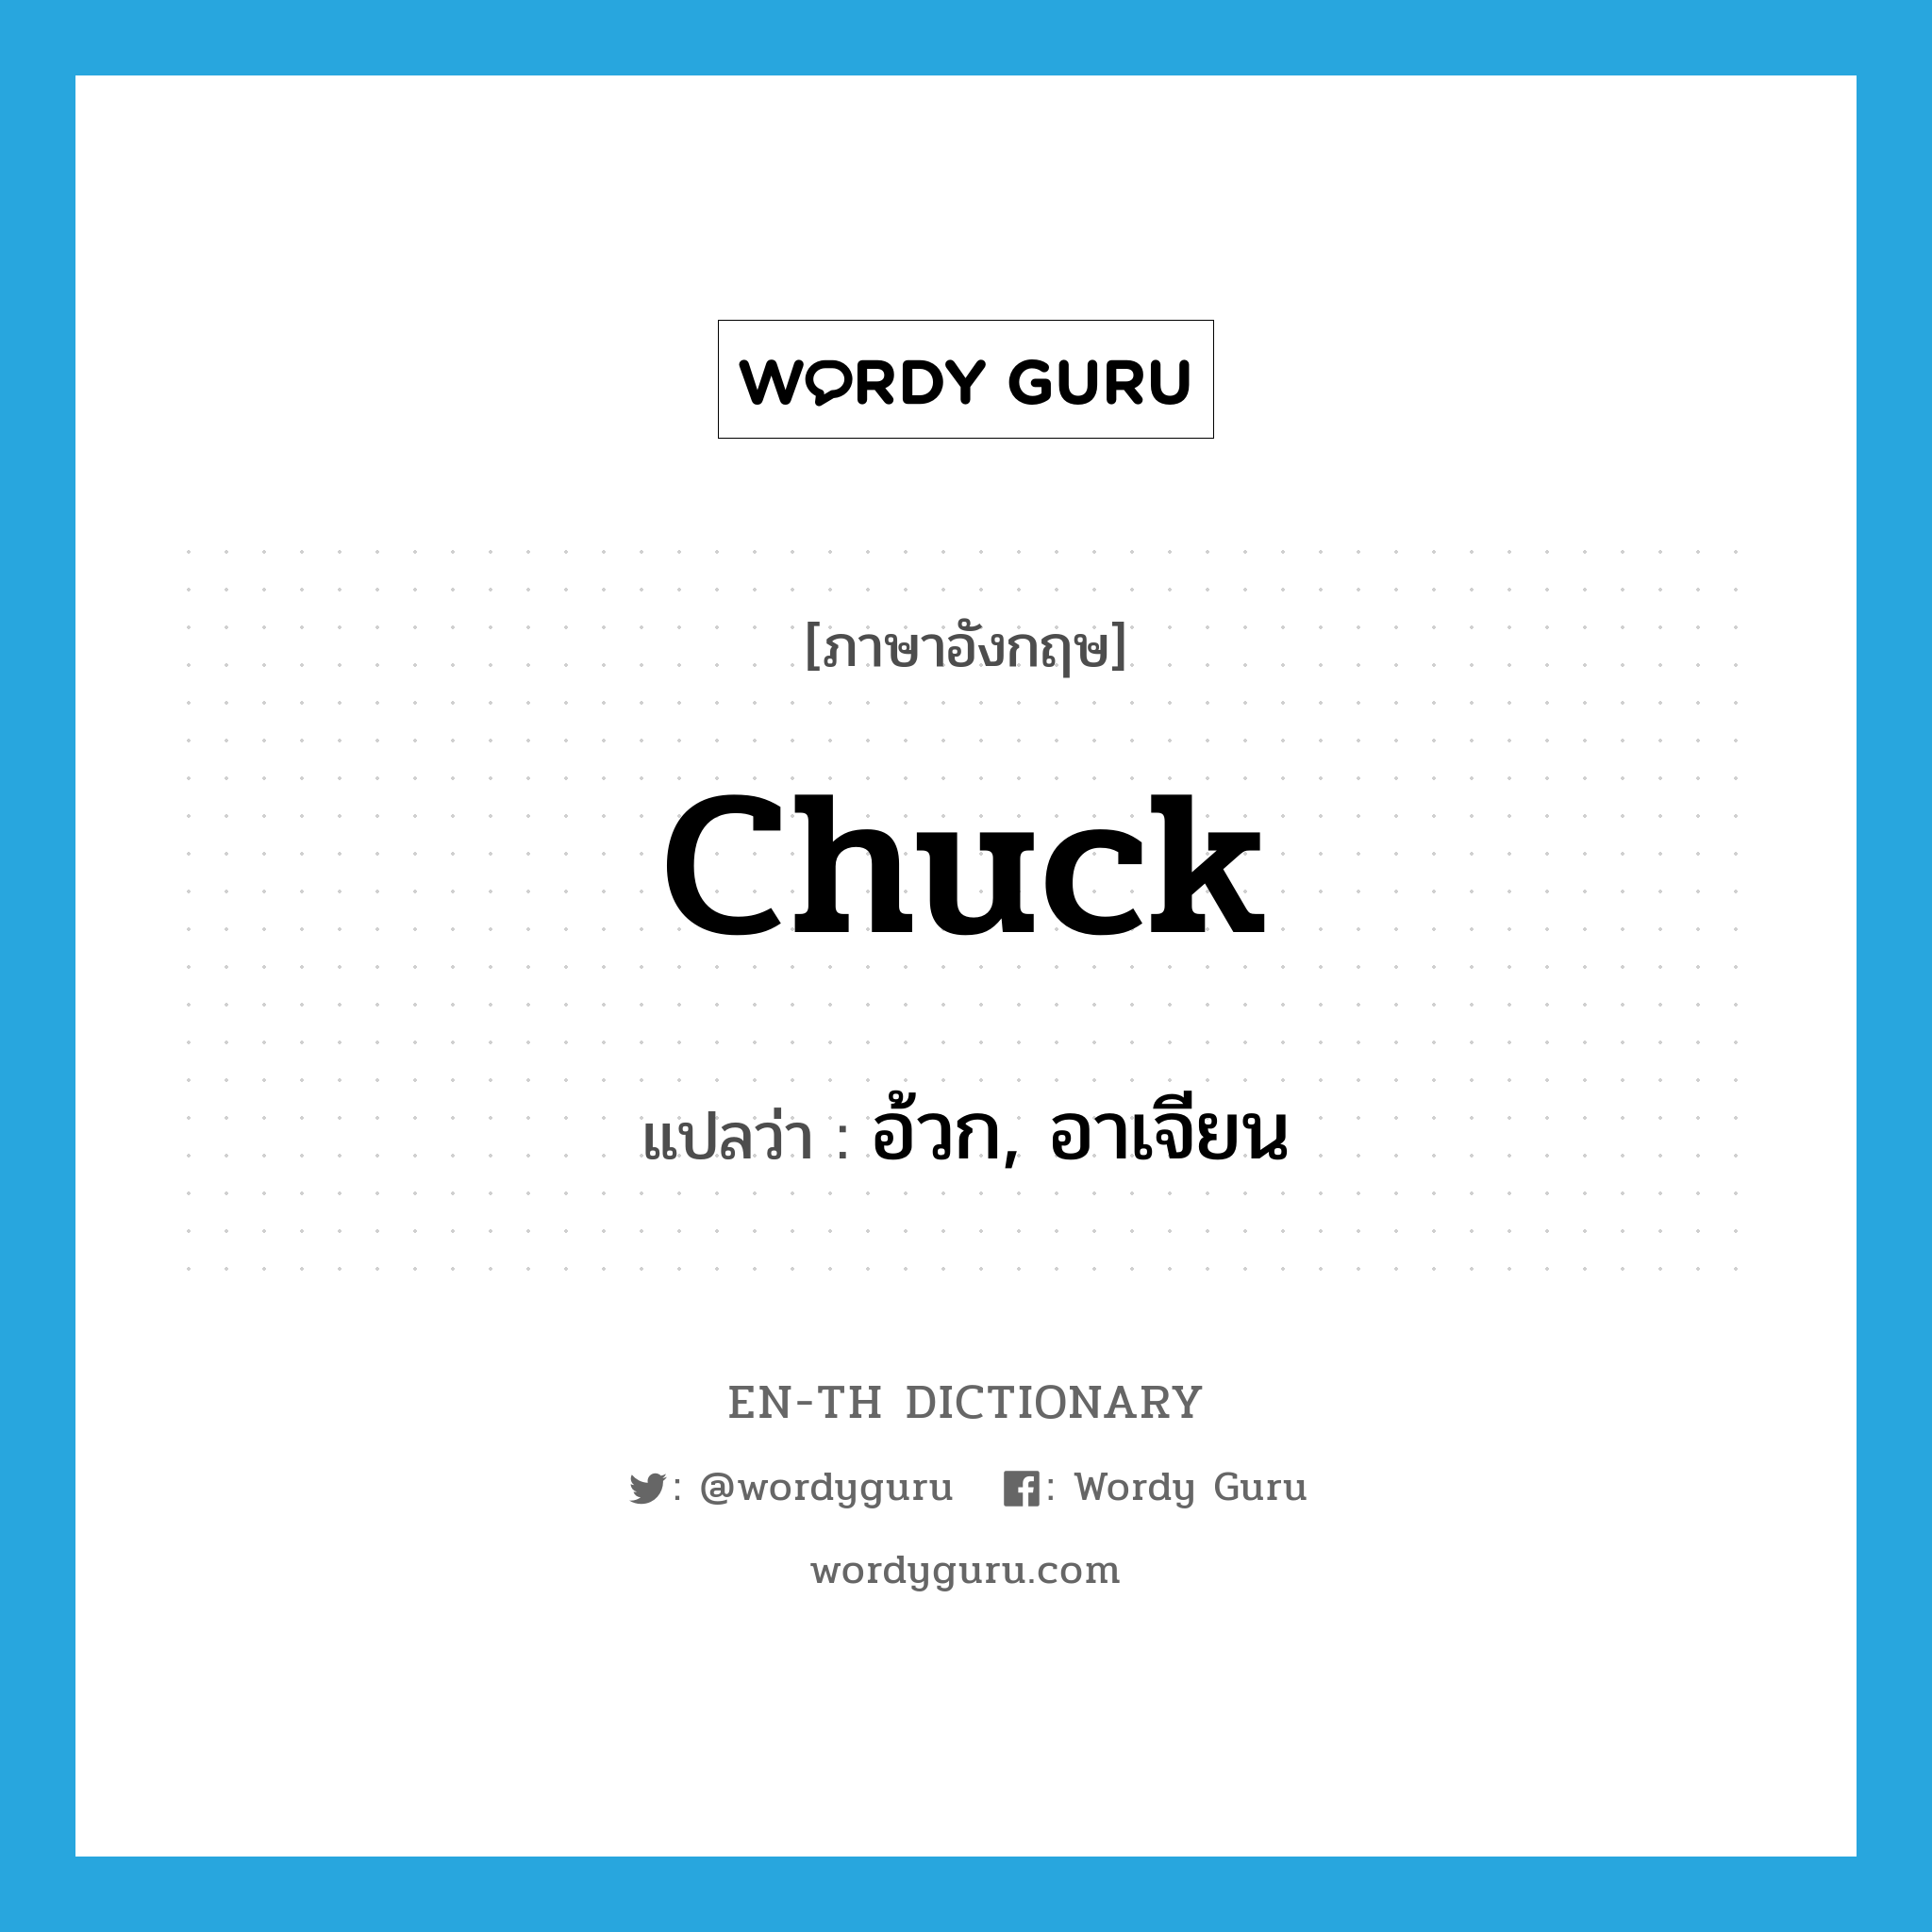 chuck แปลว่า?, คำศัพท์ภาษาอังกฤษ chuck แปลว่า อ้วก, อาเจียน ประเภท SL หมวด SL